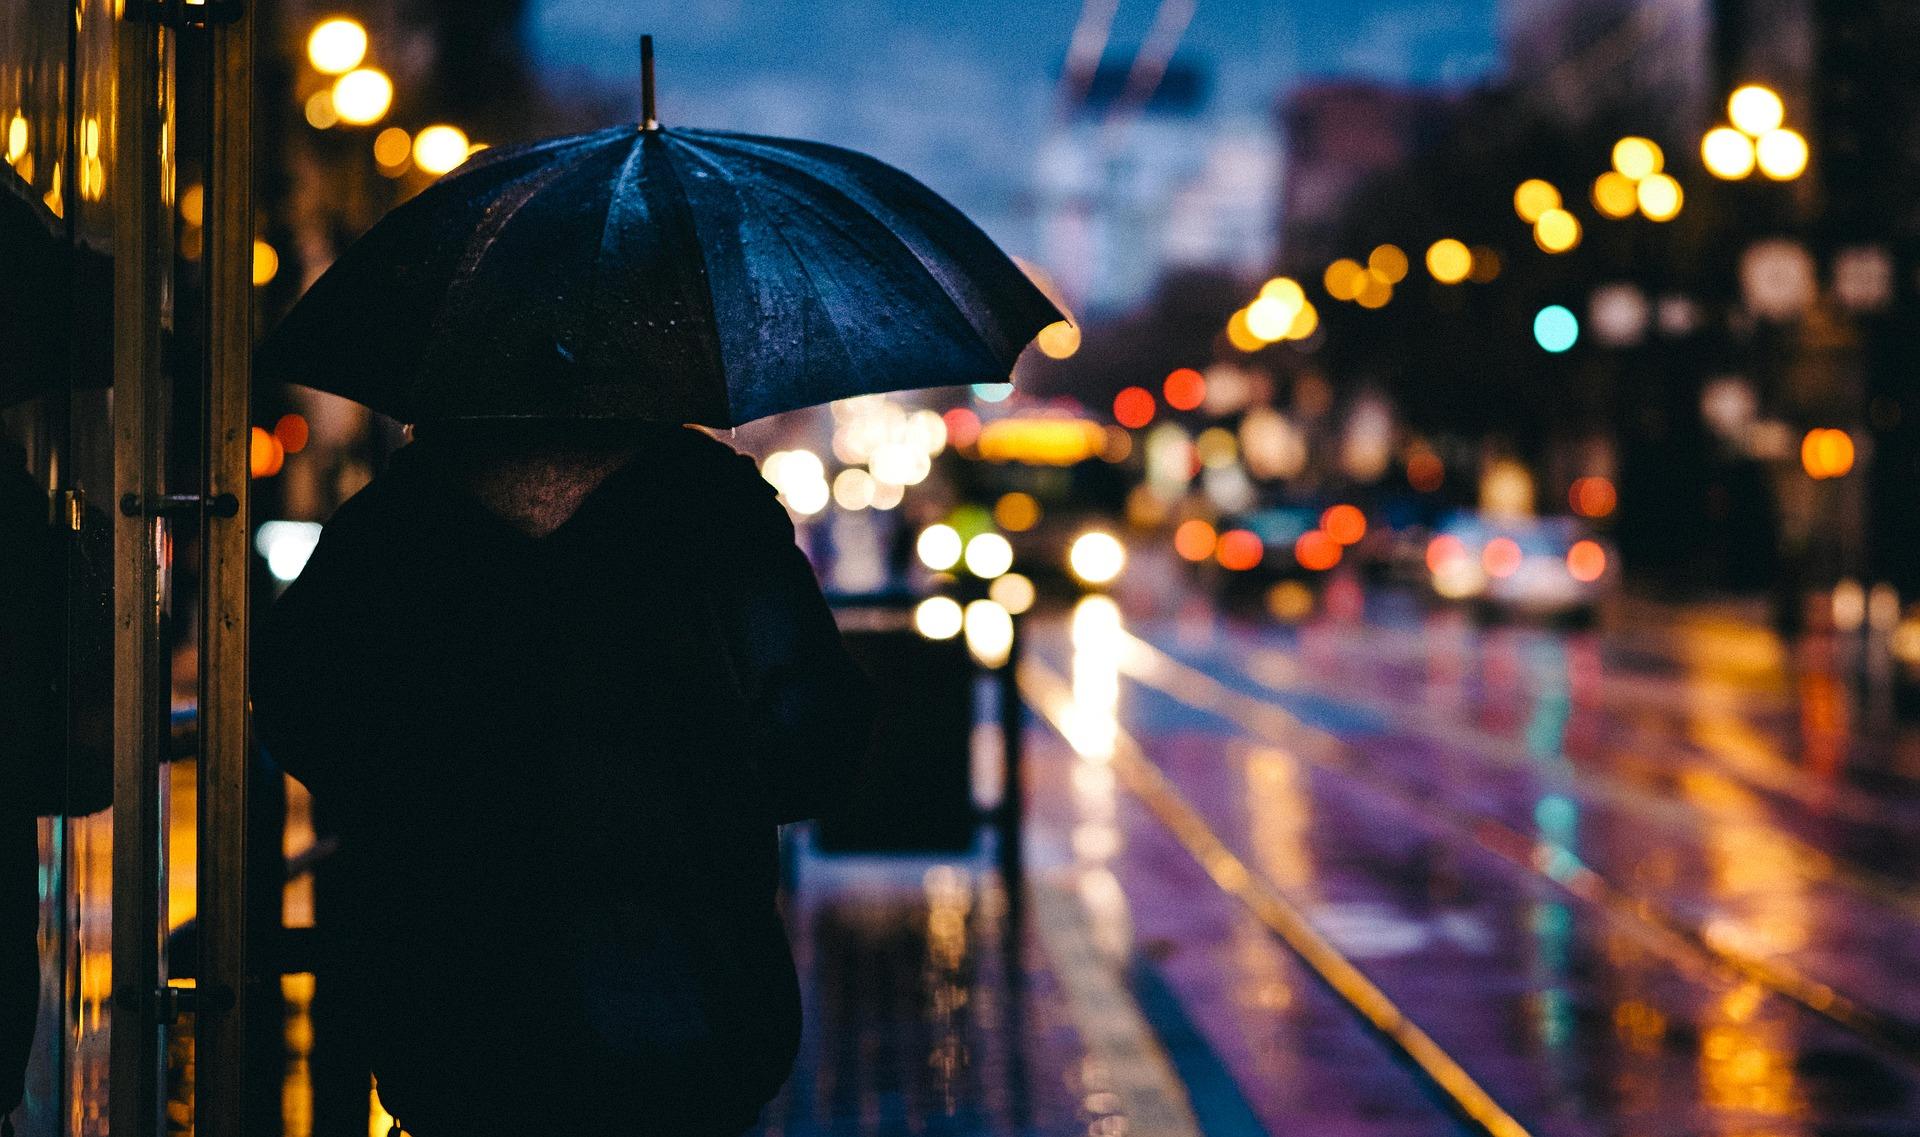 A person walks along a dark city street holding an umbrella